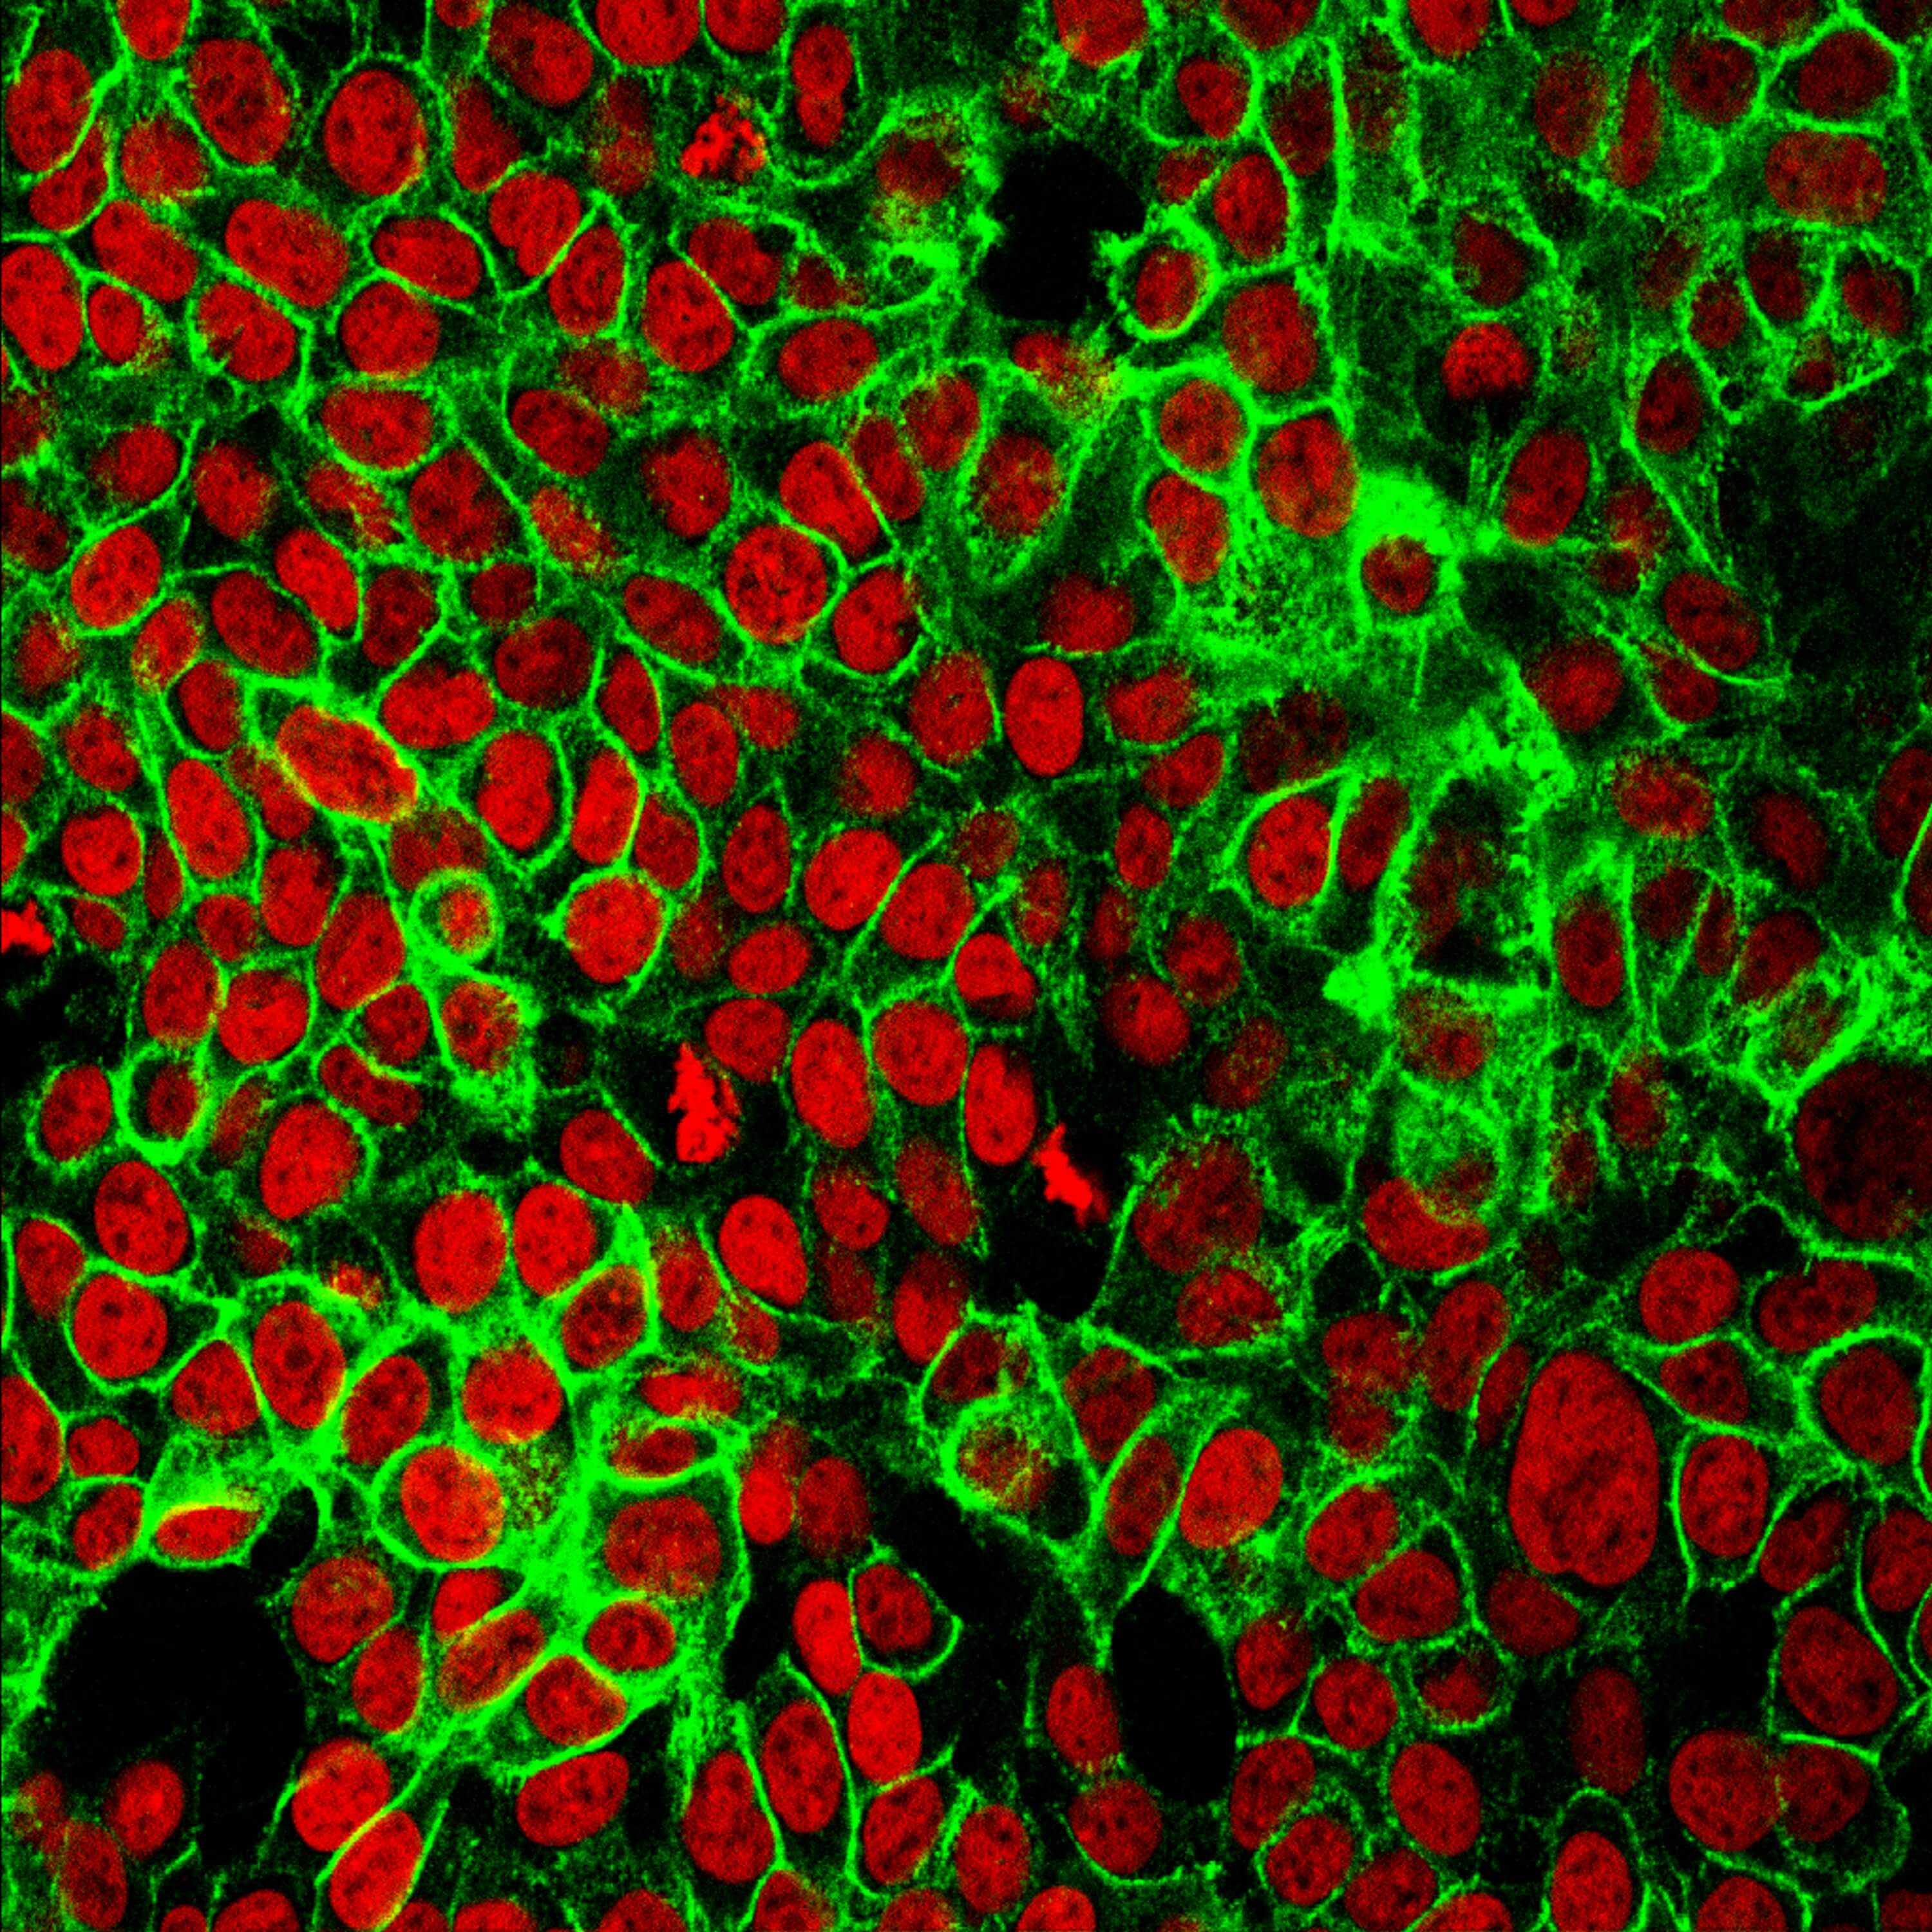 Mikroskopisches Bild von Zellen mit rot gefärbten Kernen und grün gefärbten filamentösen Strukturen, die möglicherweise Komponenten des Zytoskeletts darstellen.